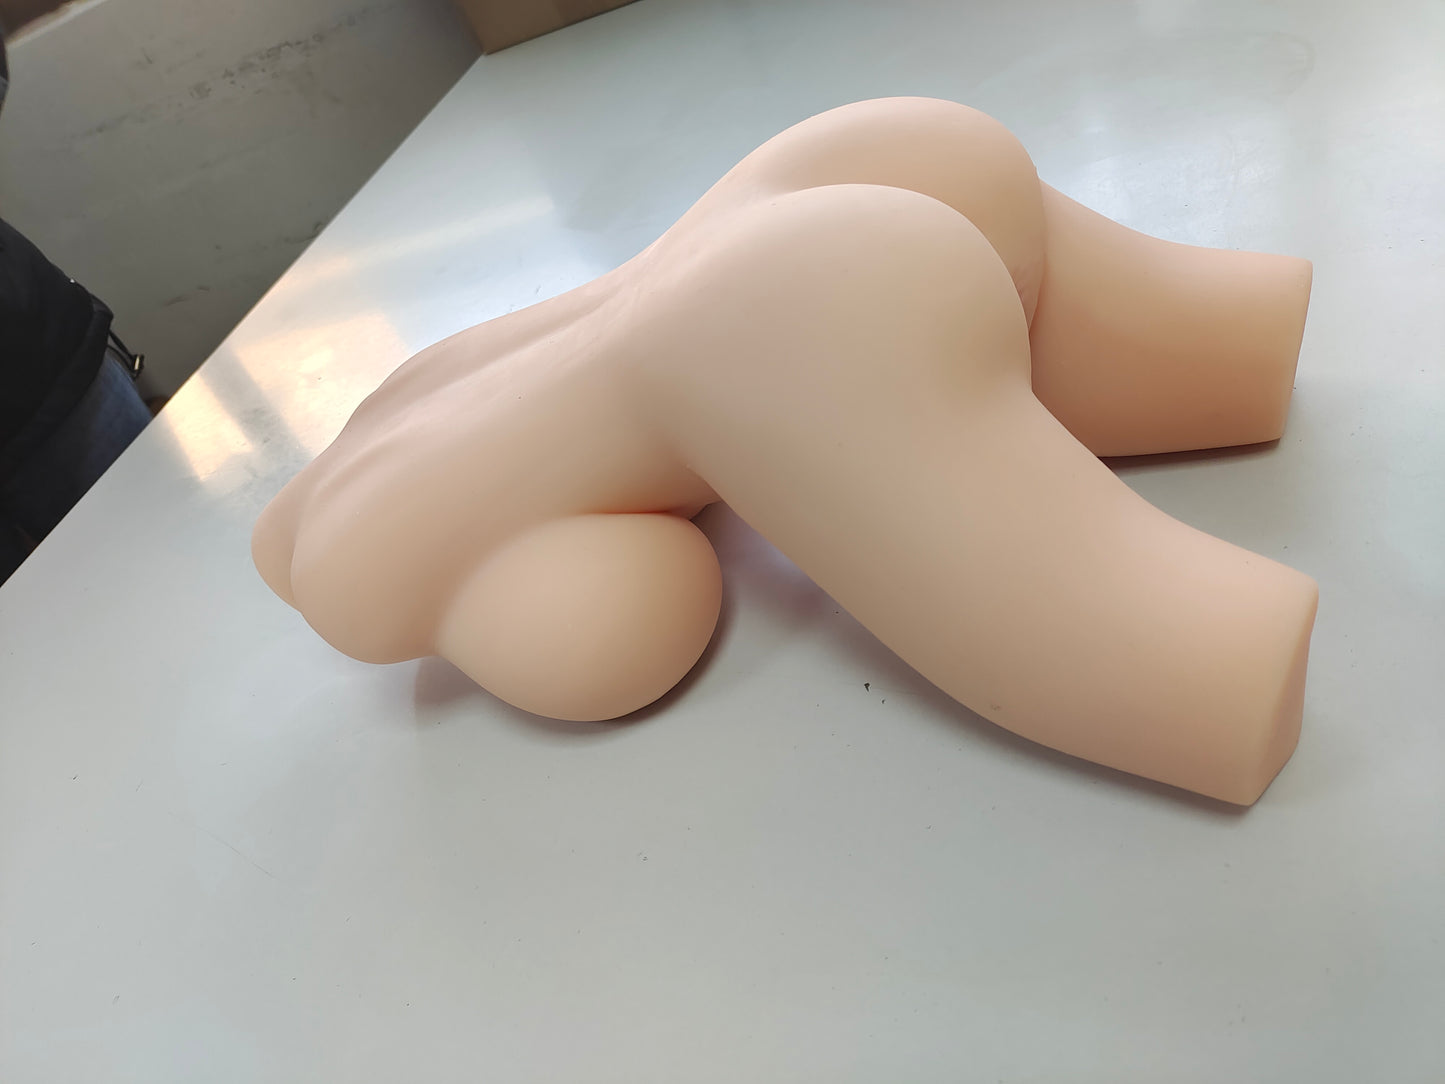 Muñeca Sexual - Busto y Butte – Elsa